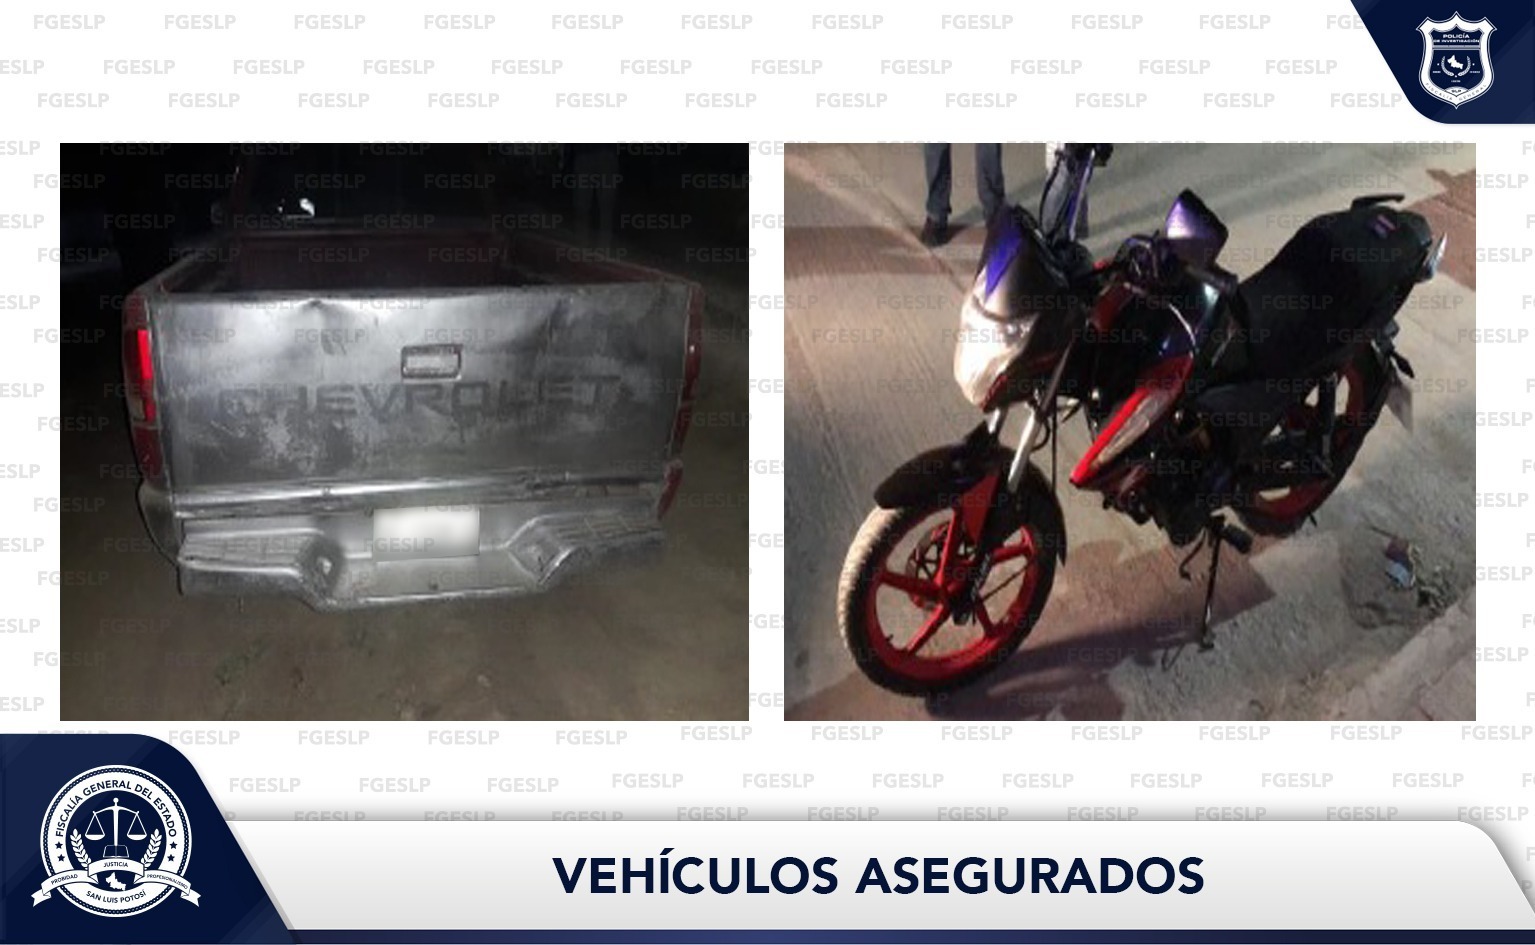 El automotor había sido robado en Santa María del Río, mientras que a la moto se le detectaron alteraciones en los números de serie